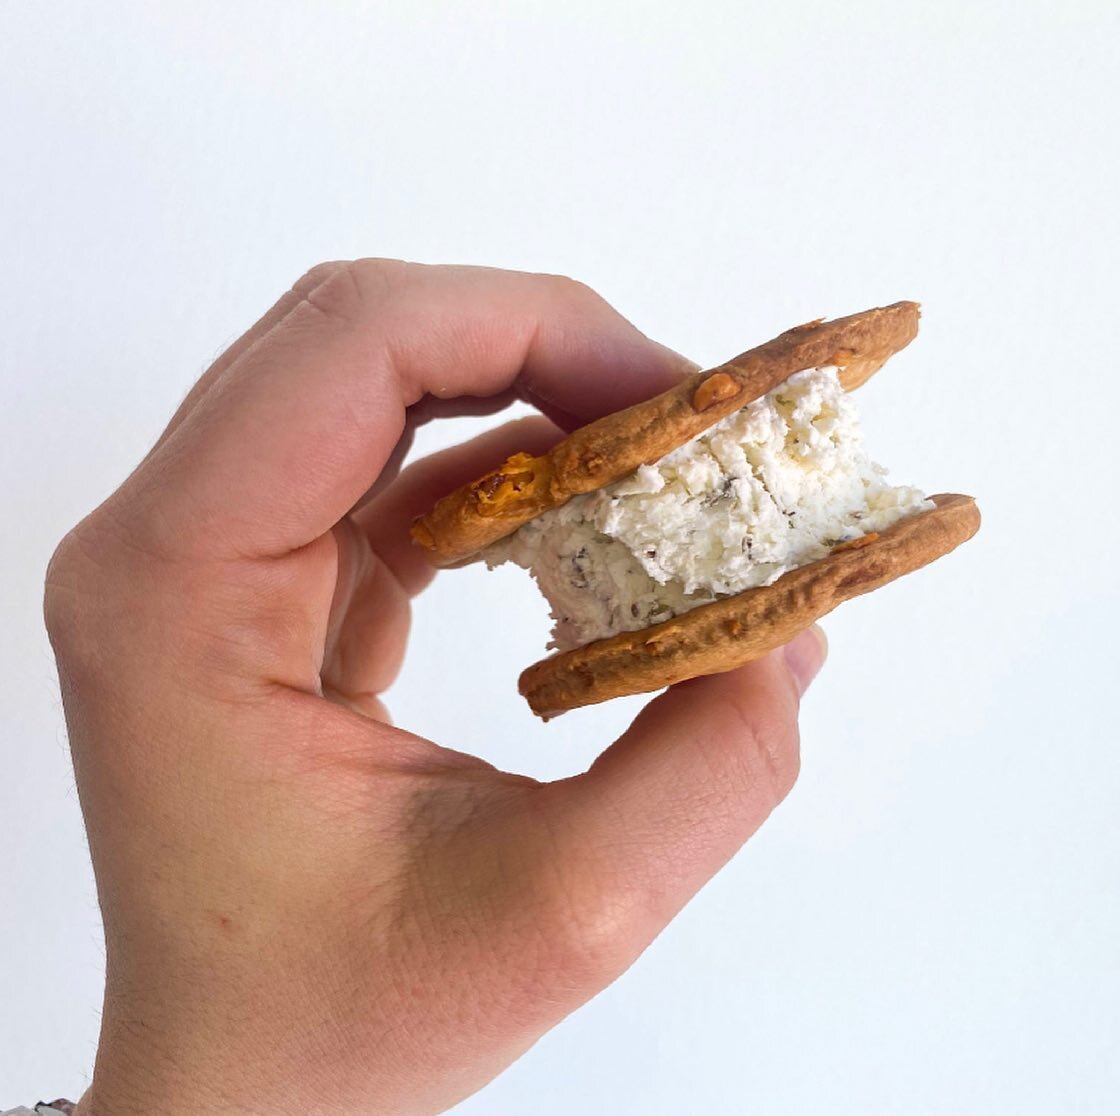 &iexcl;Hace calor! M&eacute;tele diente a este sandwichito de queso helado para refrescarte. Receta en el link en bio ⬆️ #cheese #frozencheesesandwich #cheesecrackers #summertreats #feta